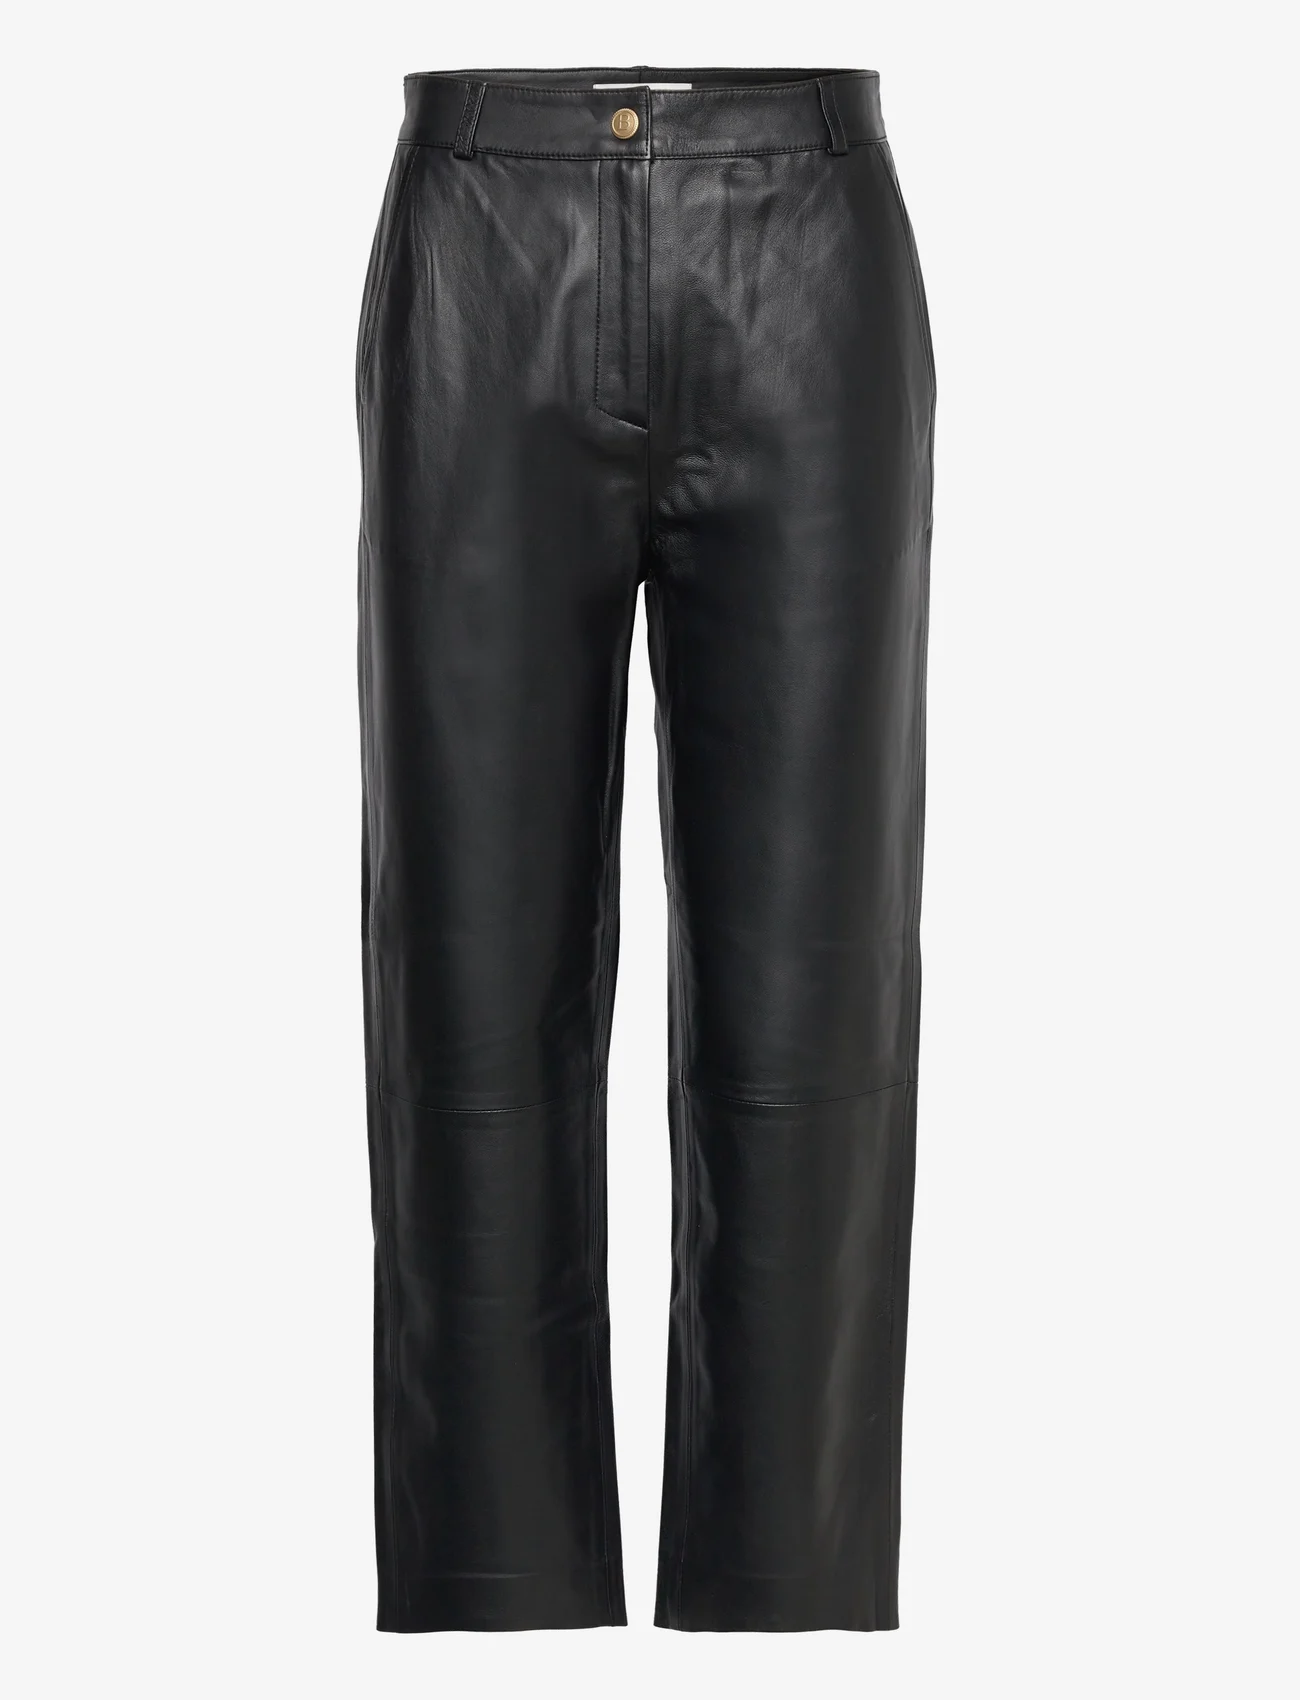 BUSNEL - ANDIE leather trousers - ballīšu apģērbs par outlet cenām - black - 0